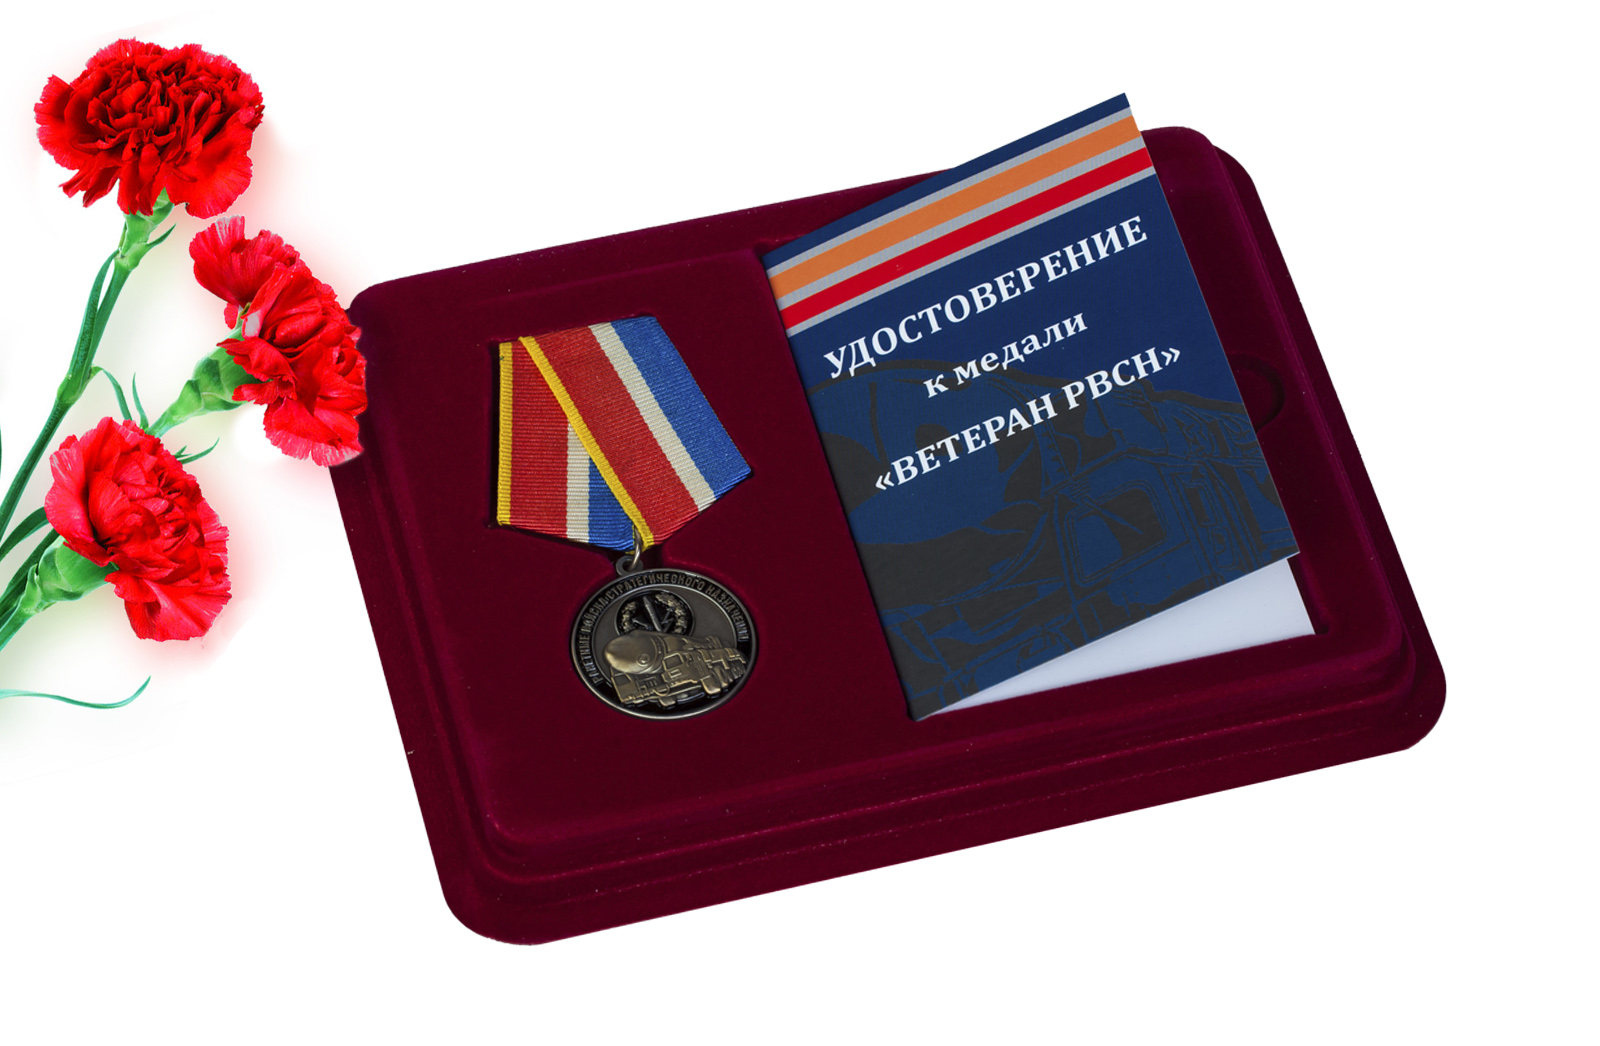 Купить медаль Ветеран РВСН в футляре с удостоверением оптом выгодно